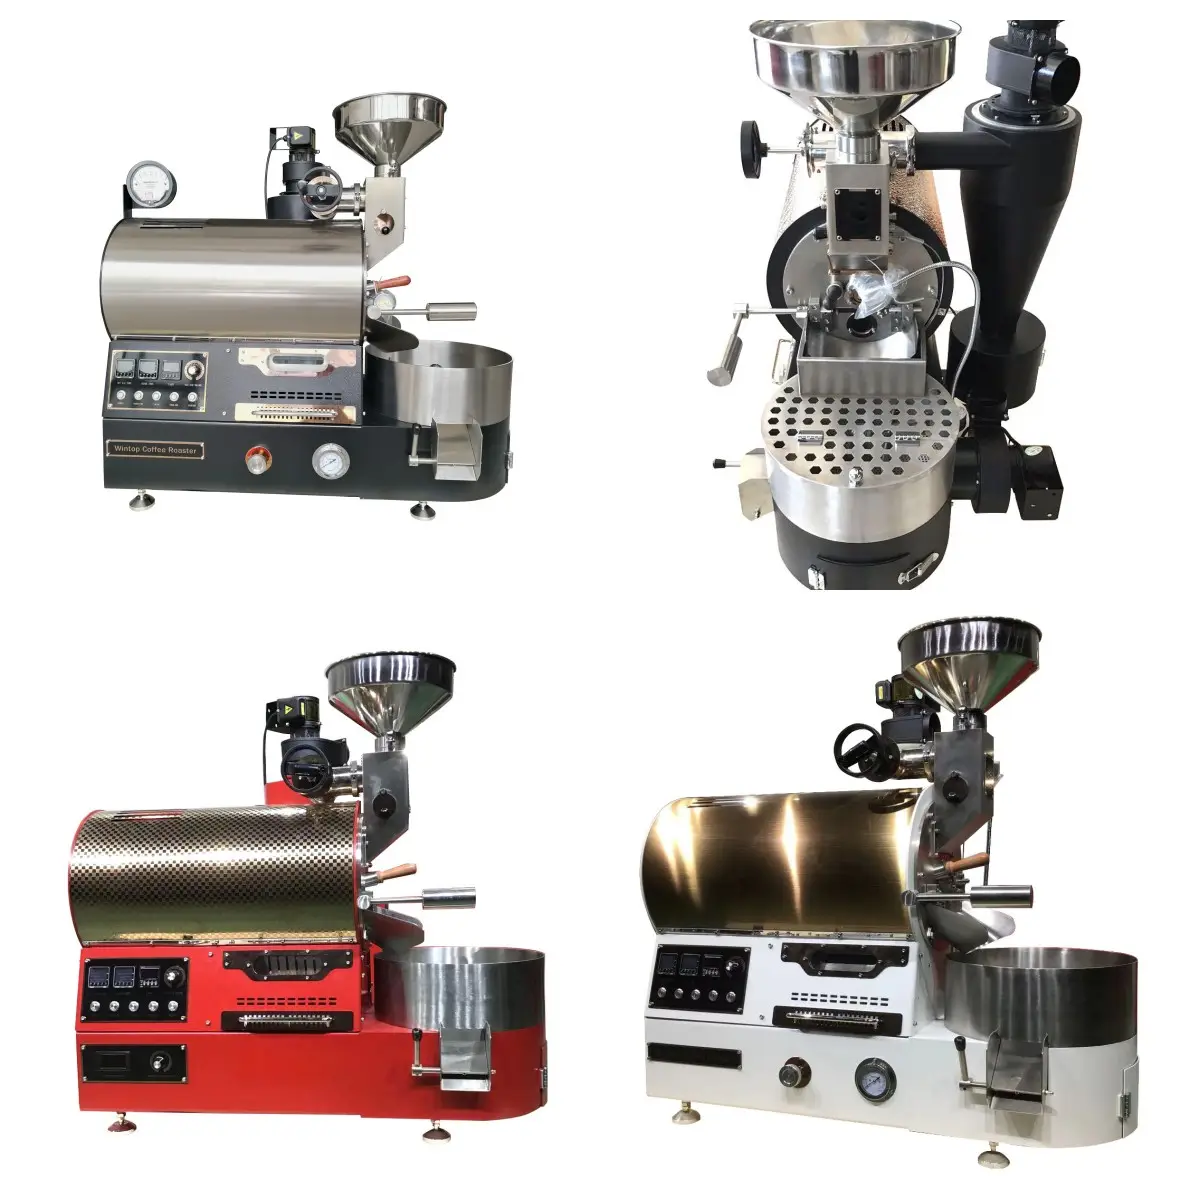 ماكينة تحميص القهوة من WINTOP سعة 1 كجم و2 كجم و3 كجم ماكينة تحميص صغيرة منزلية تجارية ماكينة تحميص للمقهى